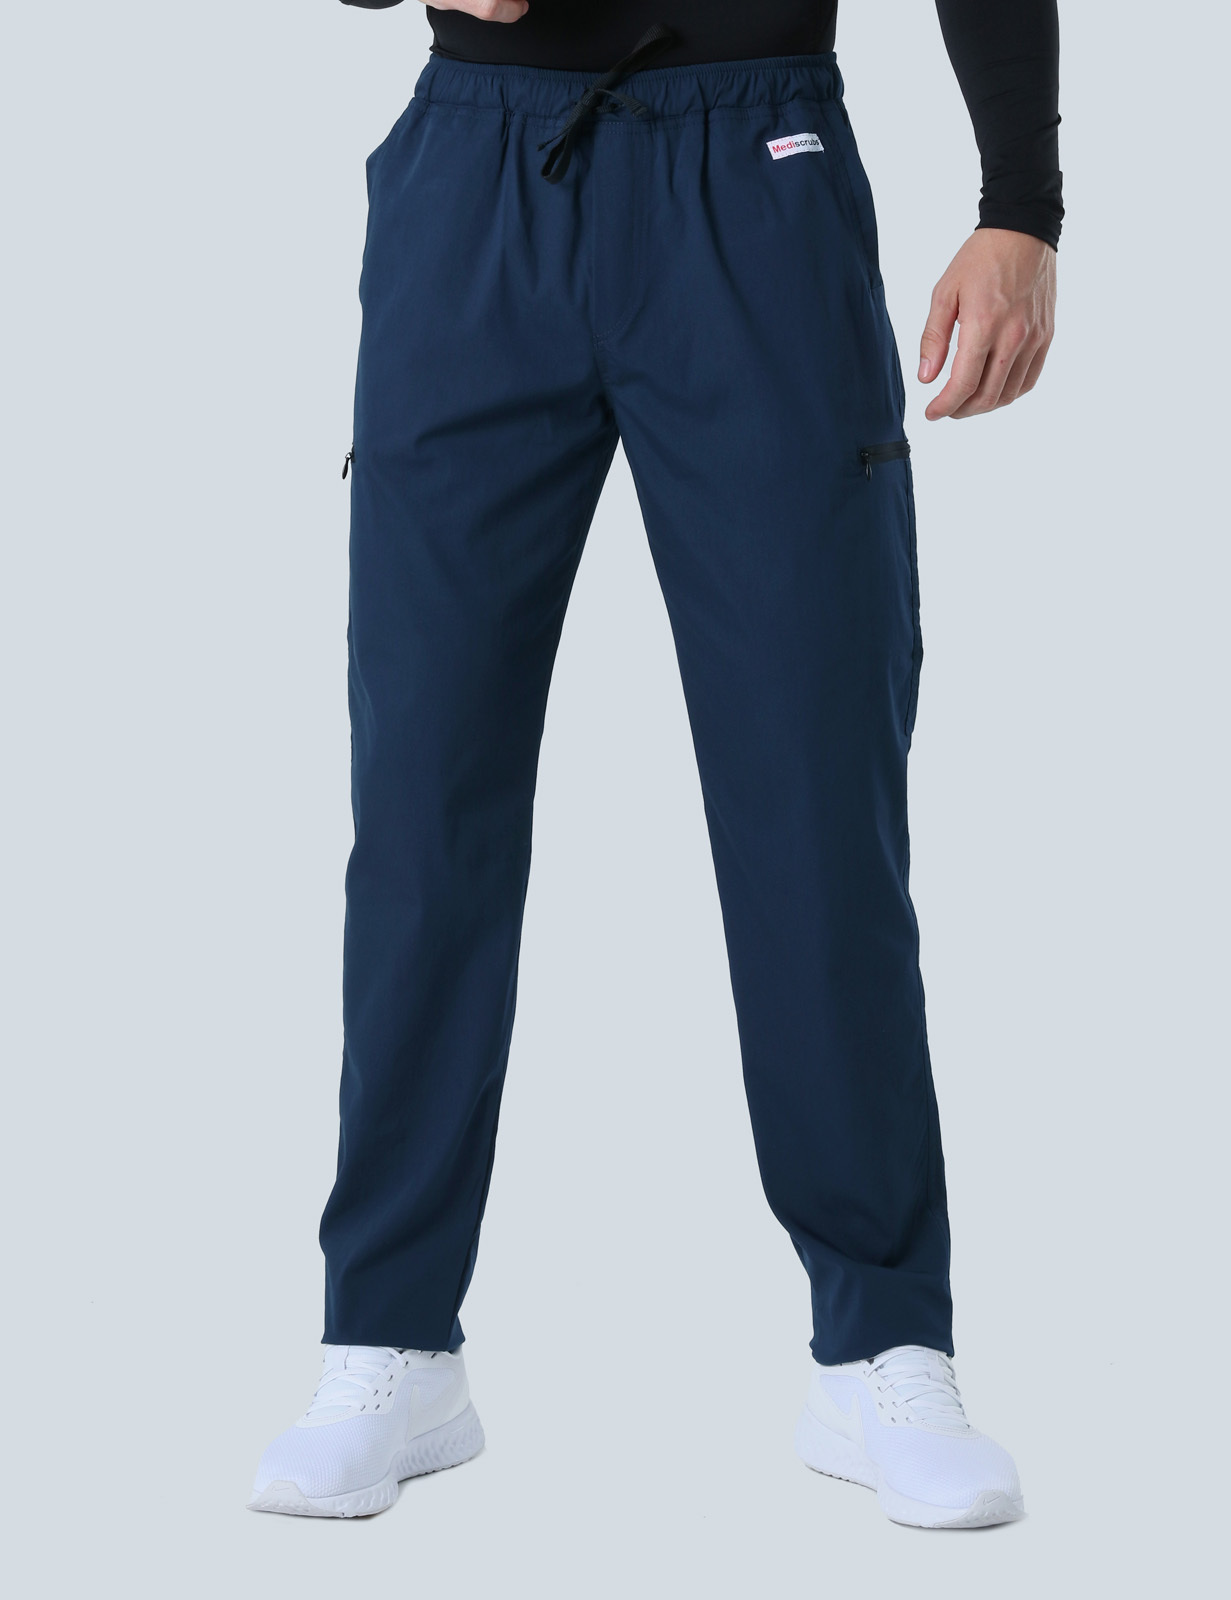 Men's Utility Pants - Navy - XX Small